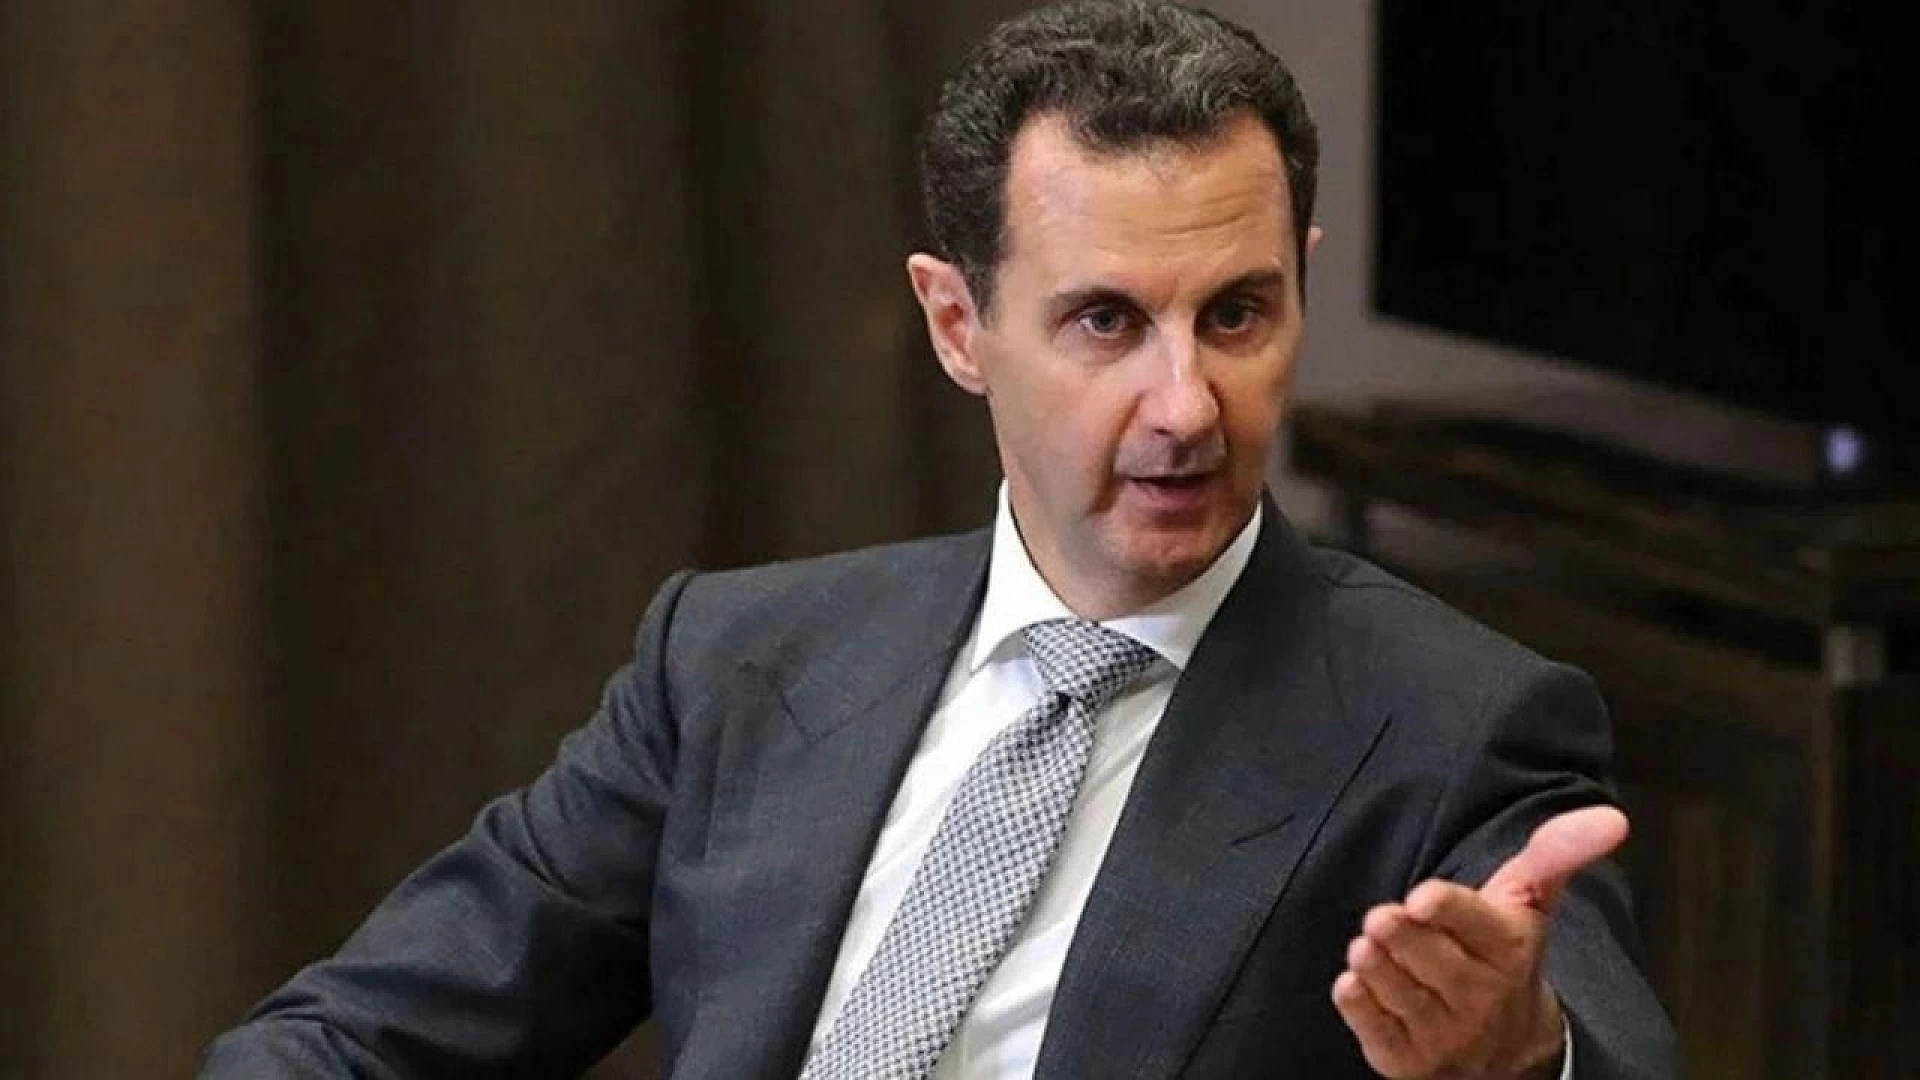 Esad, Suriye'den kaçanları da kapsayan genel af ilan etti